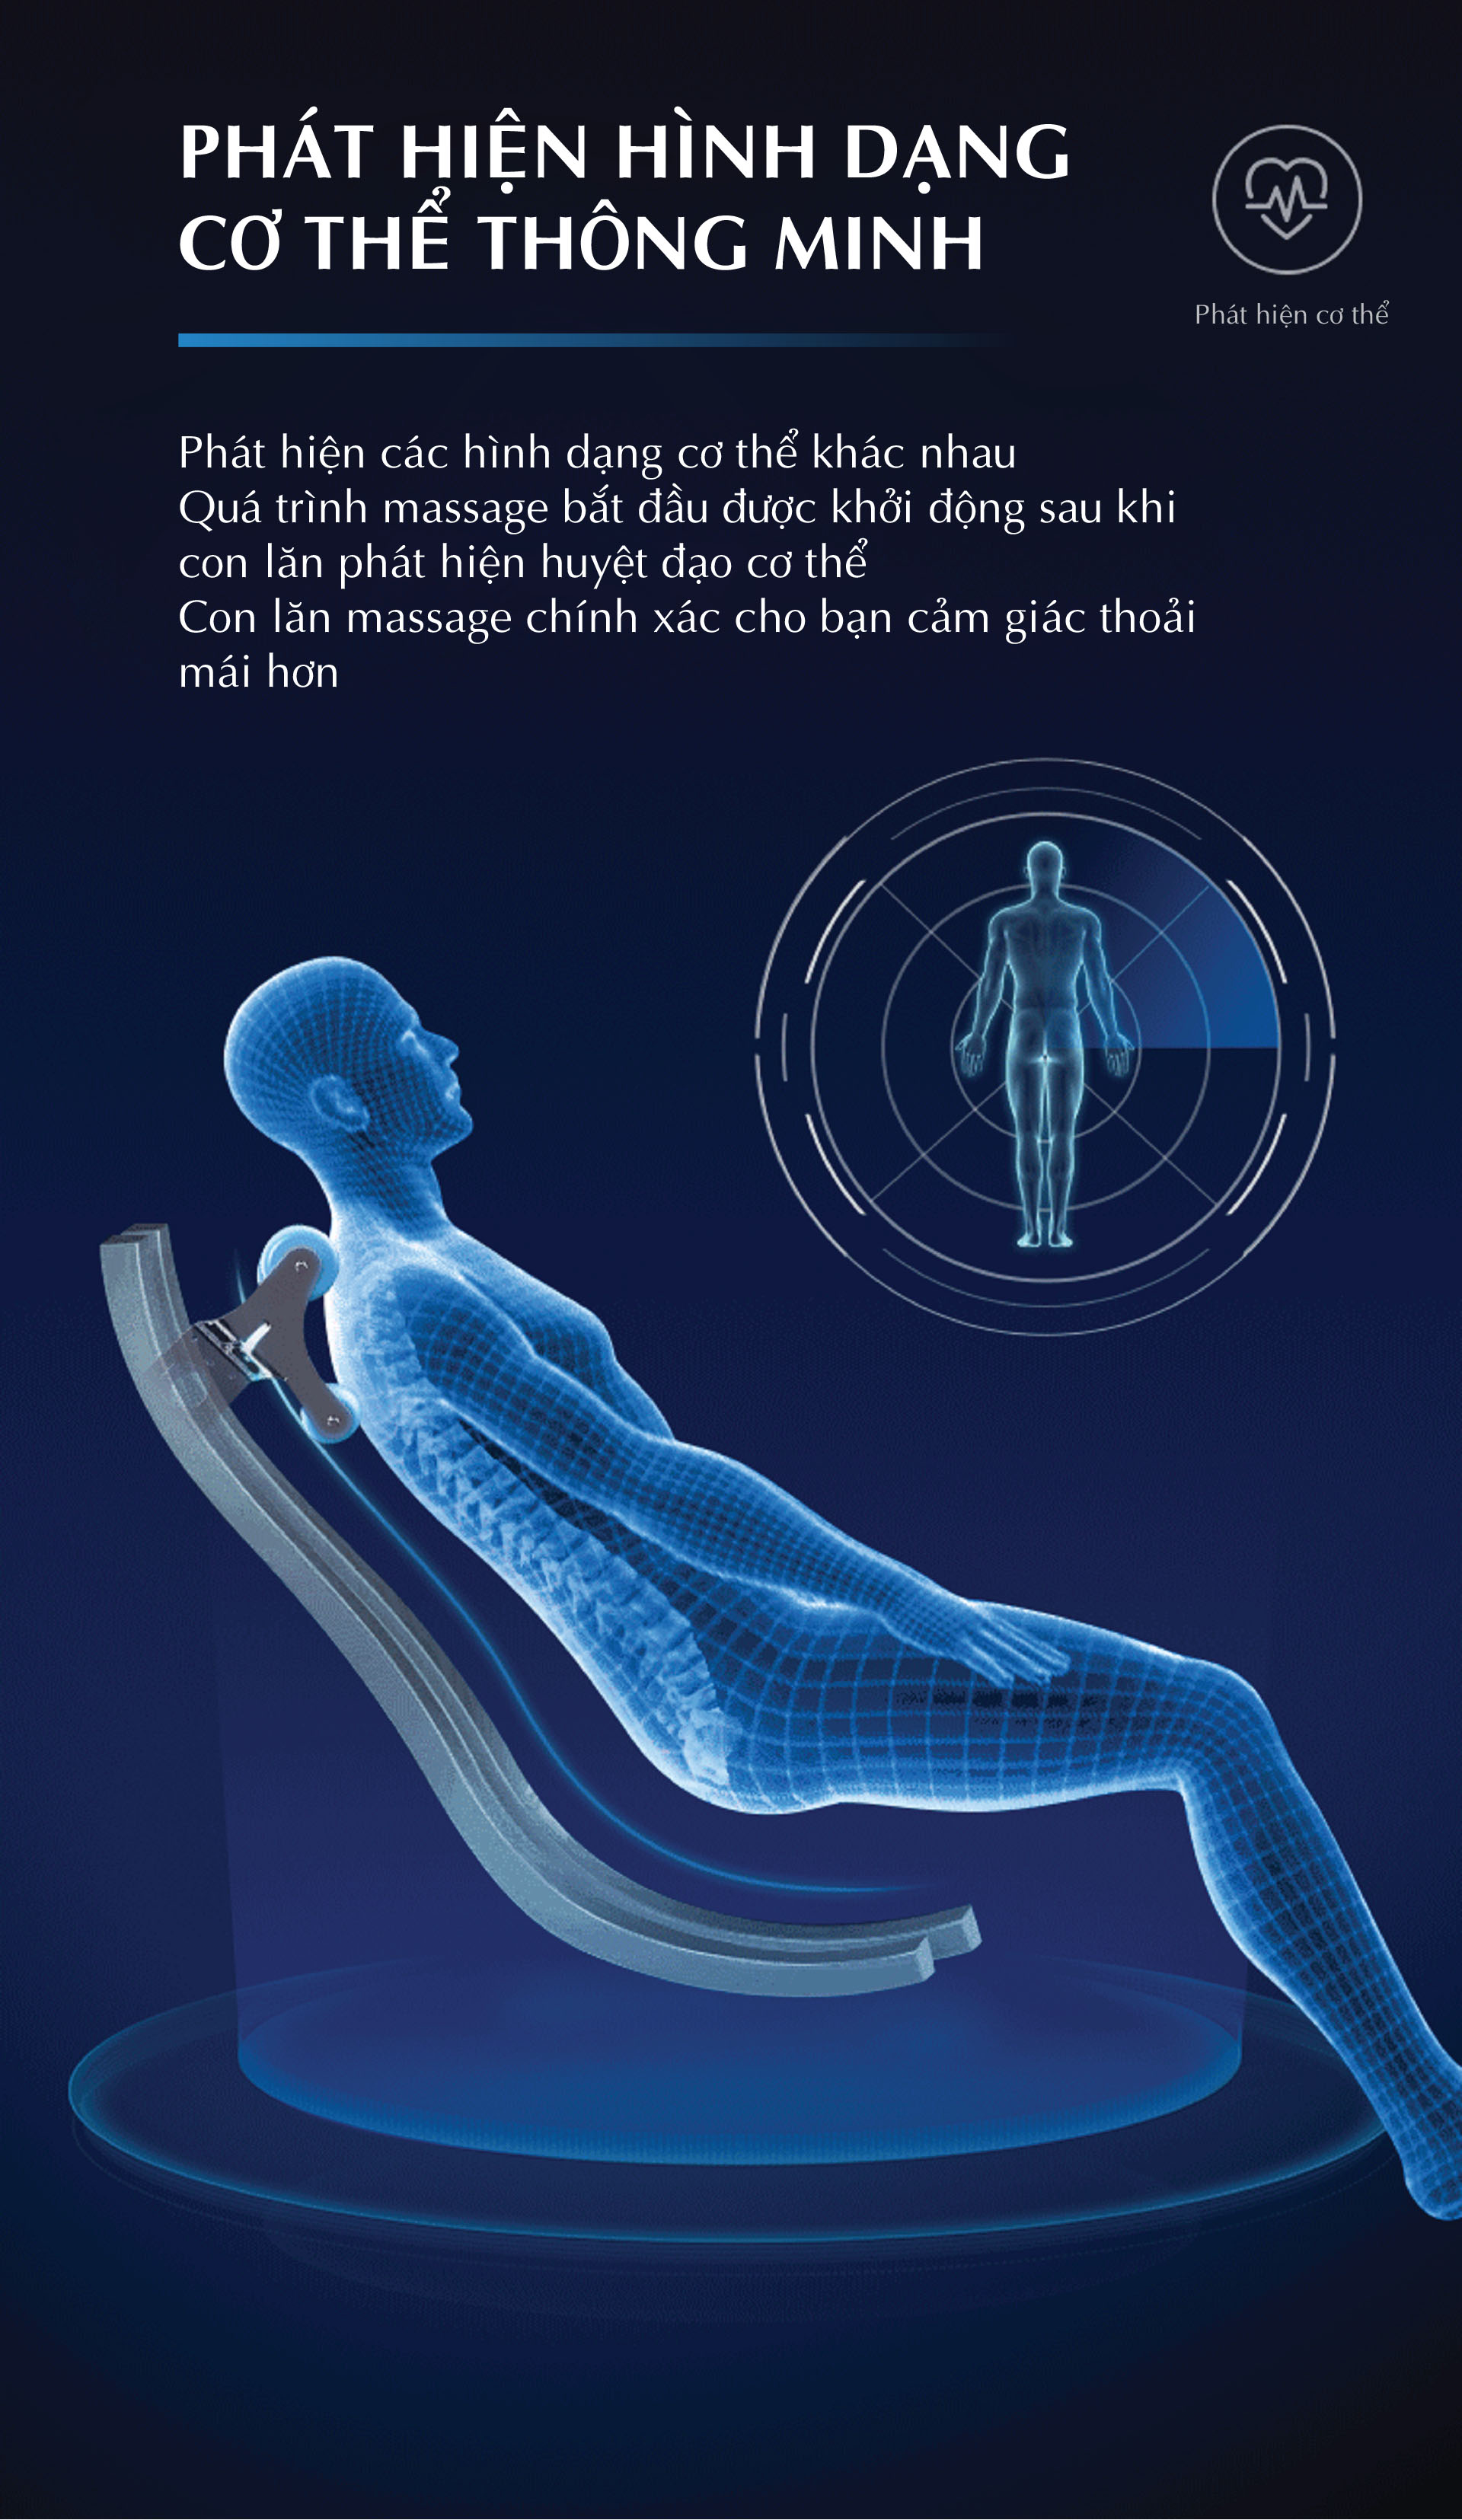 Chức năng quan trọng của Ghế massage - Lưu ý khi chọn